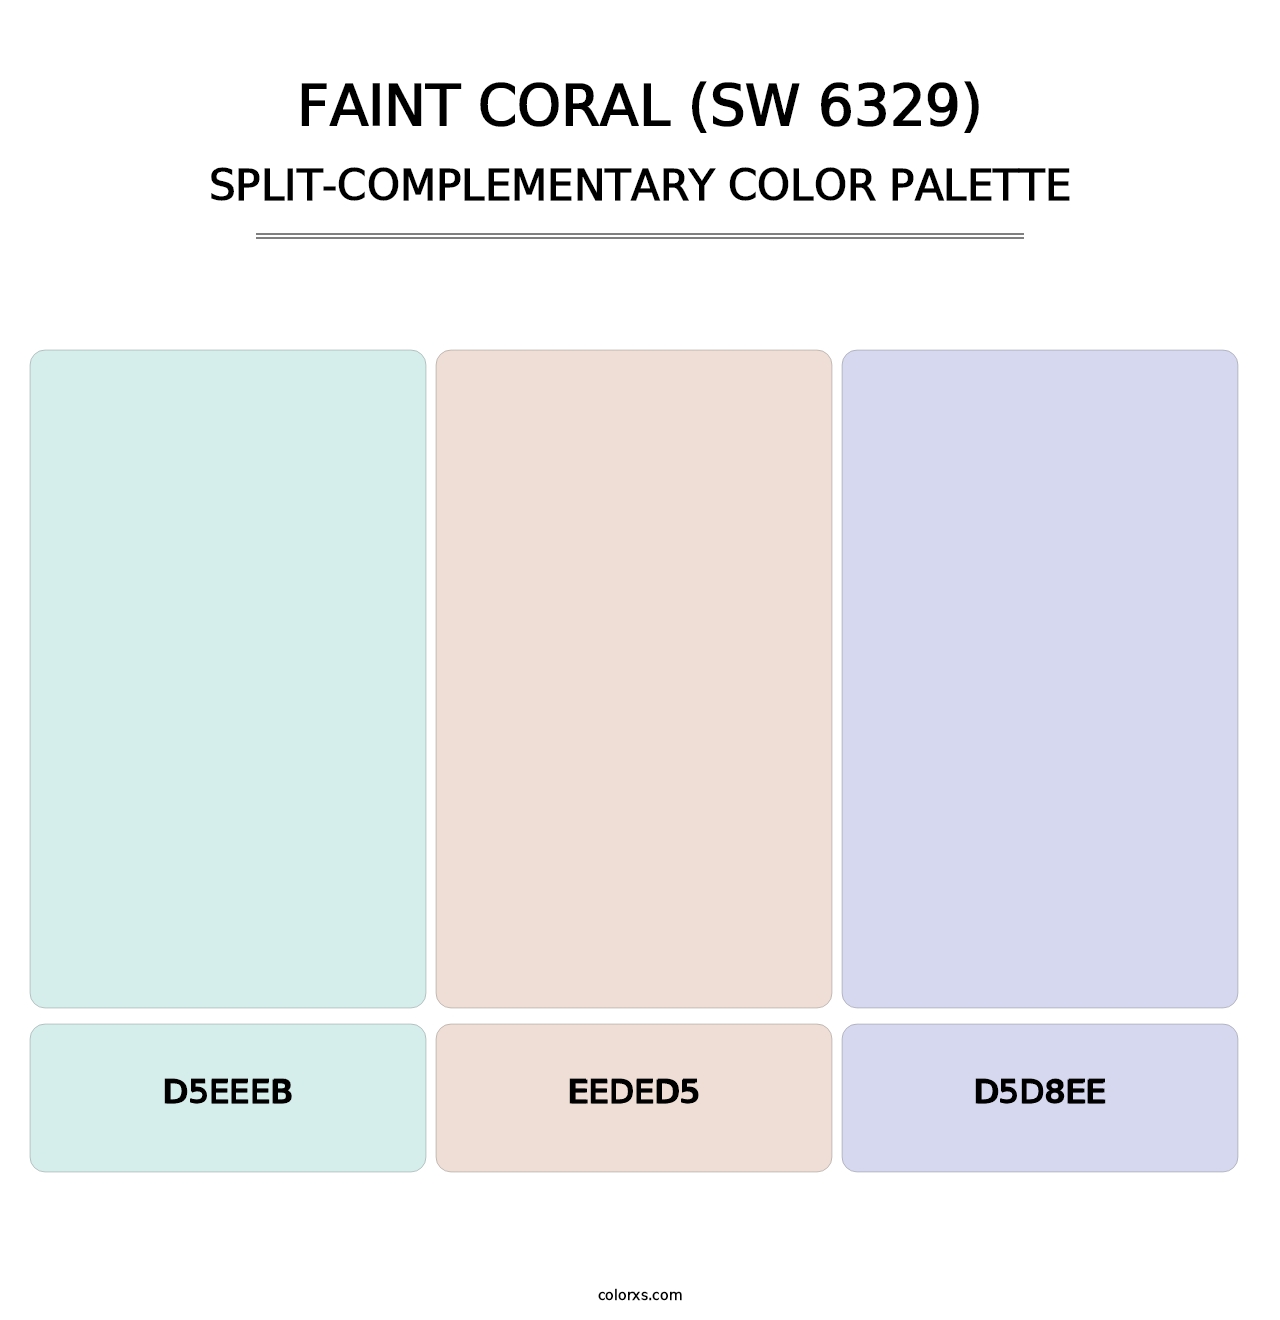 Faint Coral (SW 6329) - Split-Complementary Color Palette